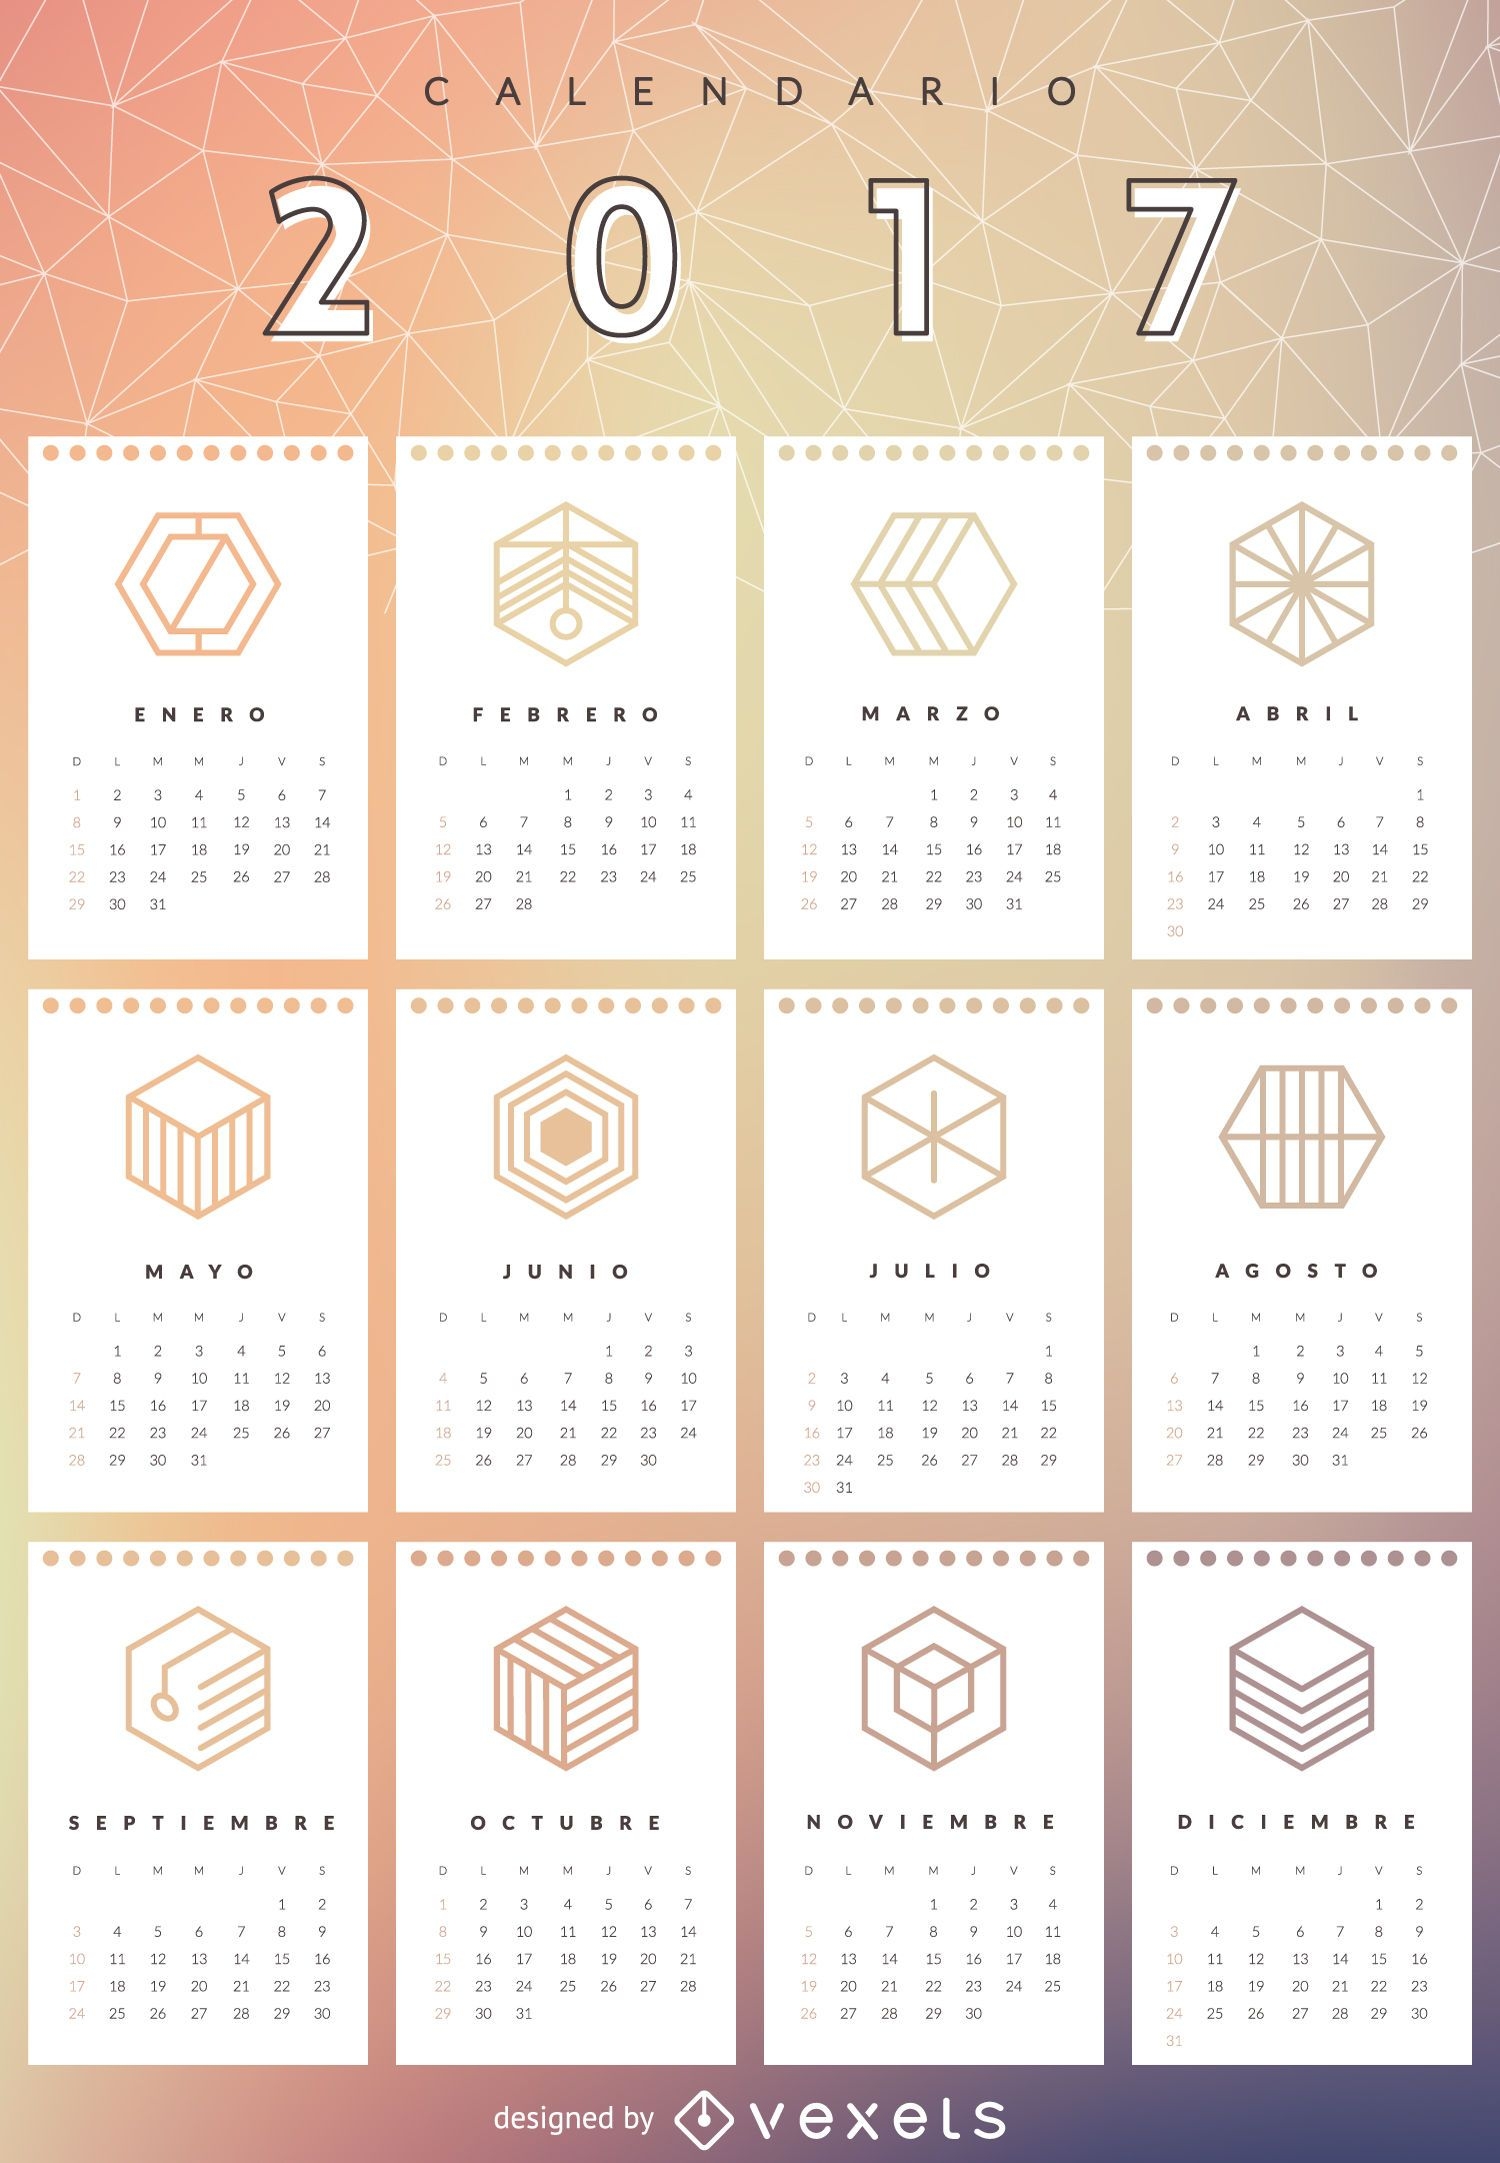 Geometrischer Netzkalender 2017 auf Spanisch